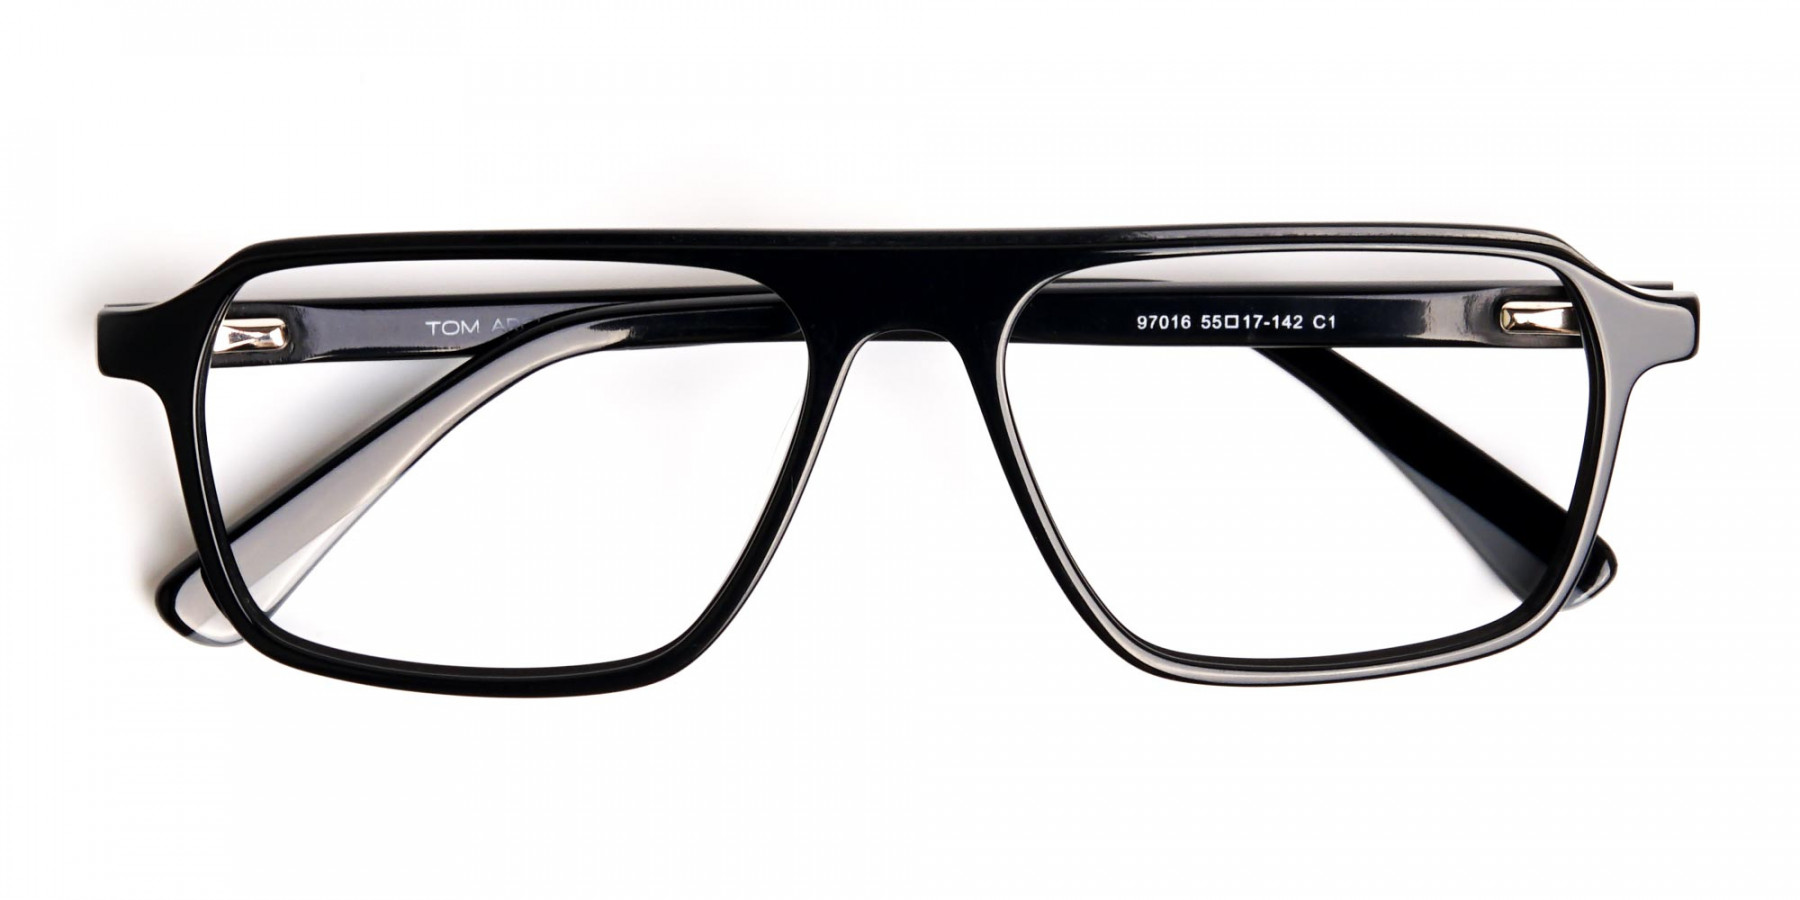 Dark-Black-Rectangular-Full-Rim-Glasses-frames-1